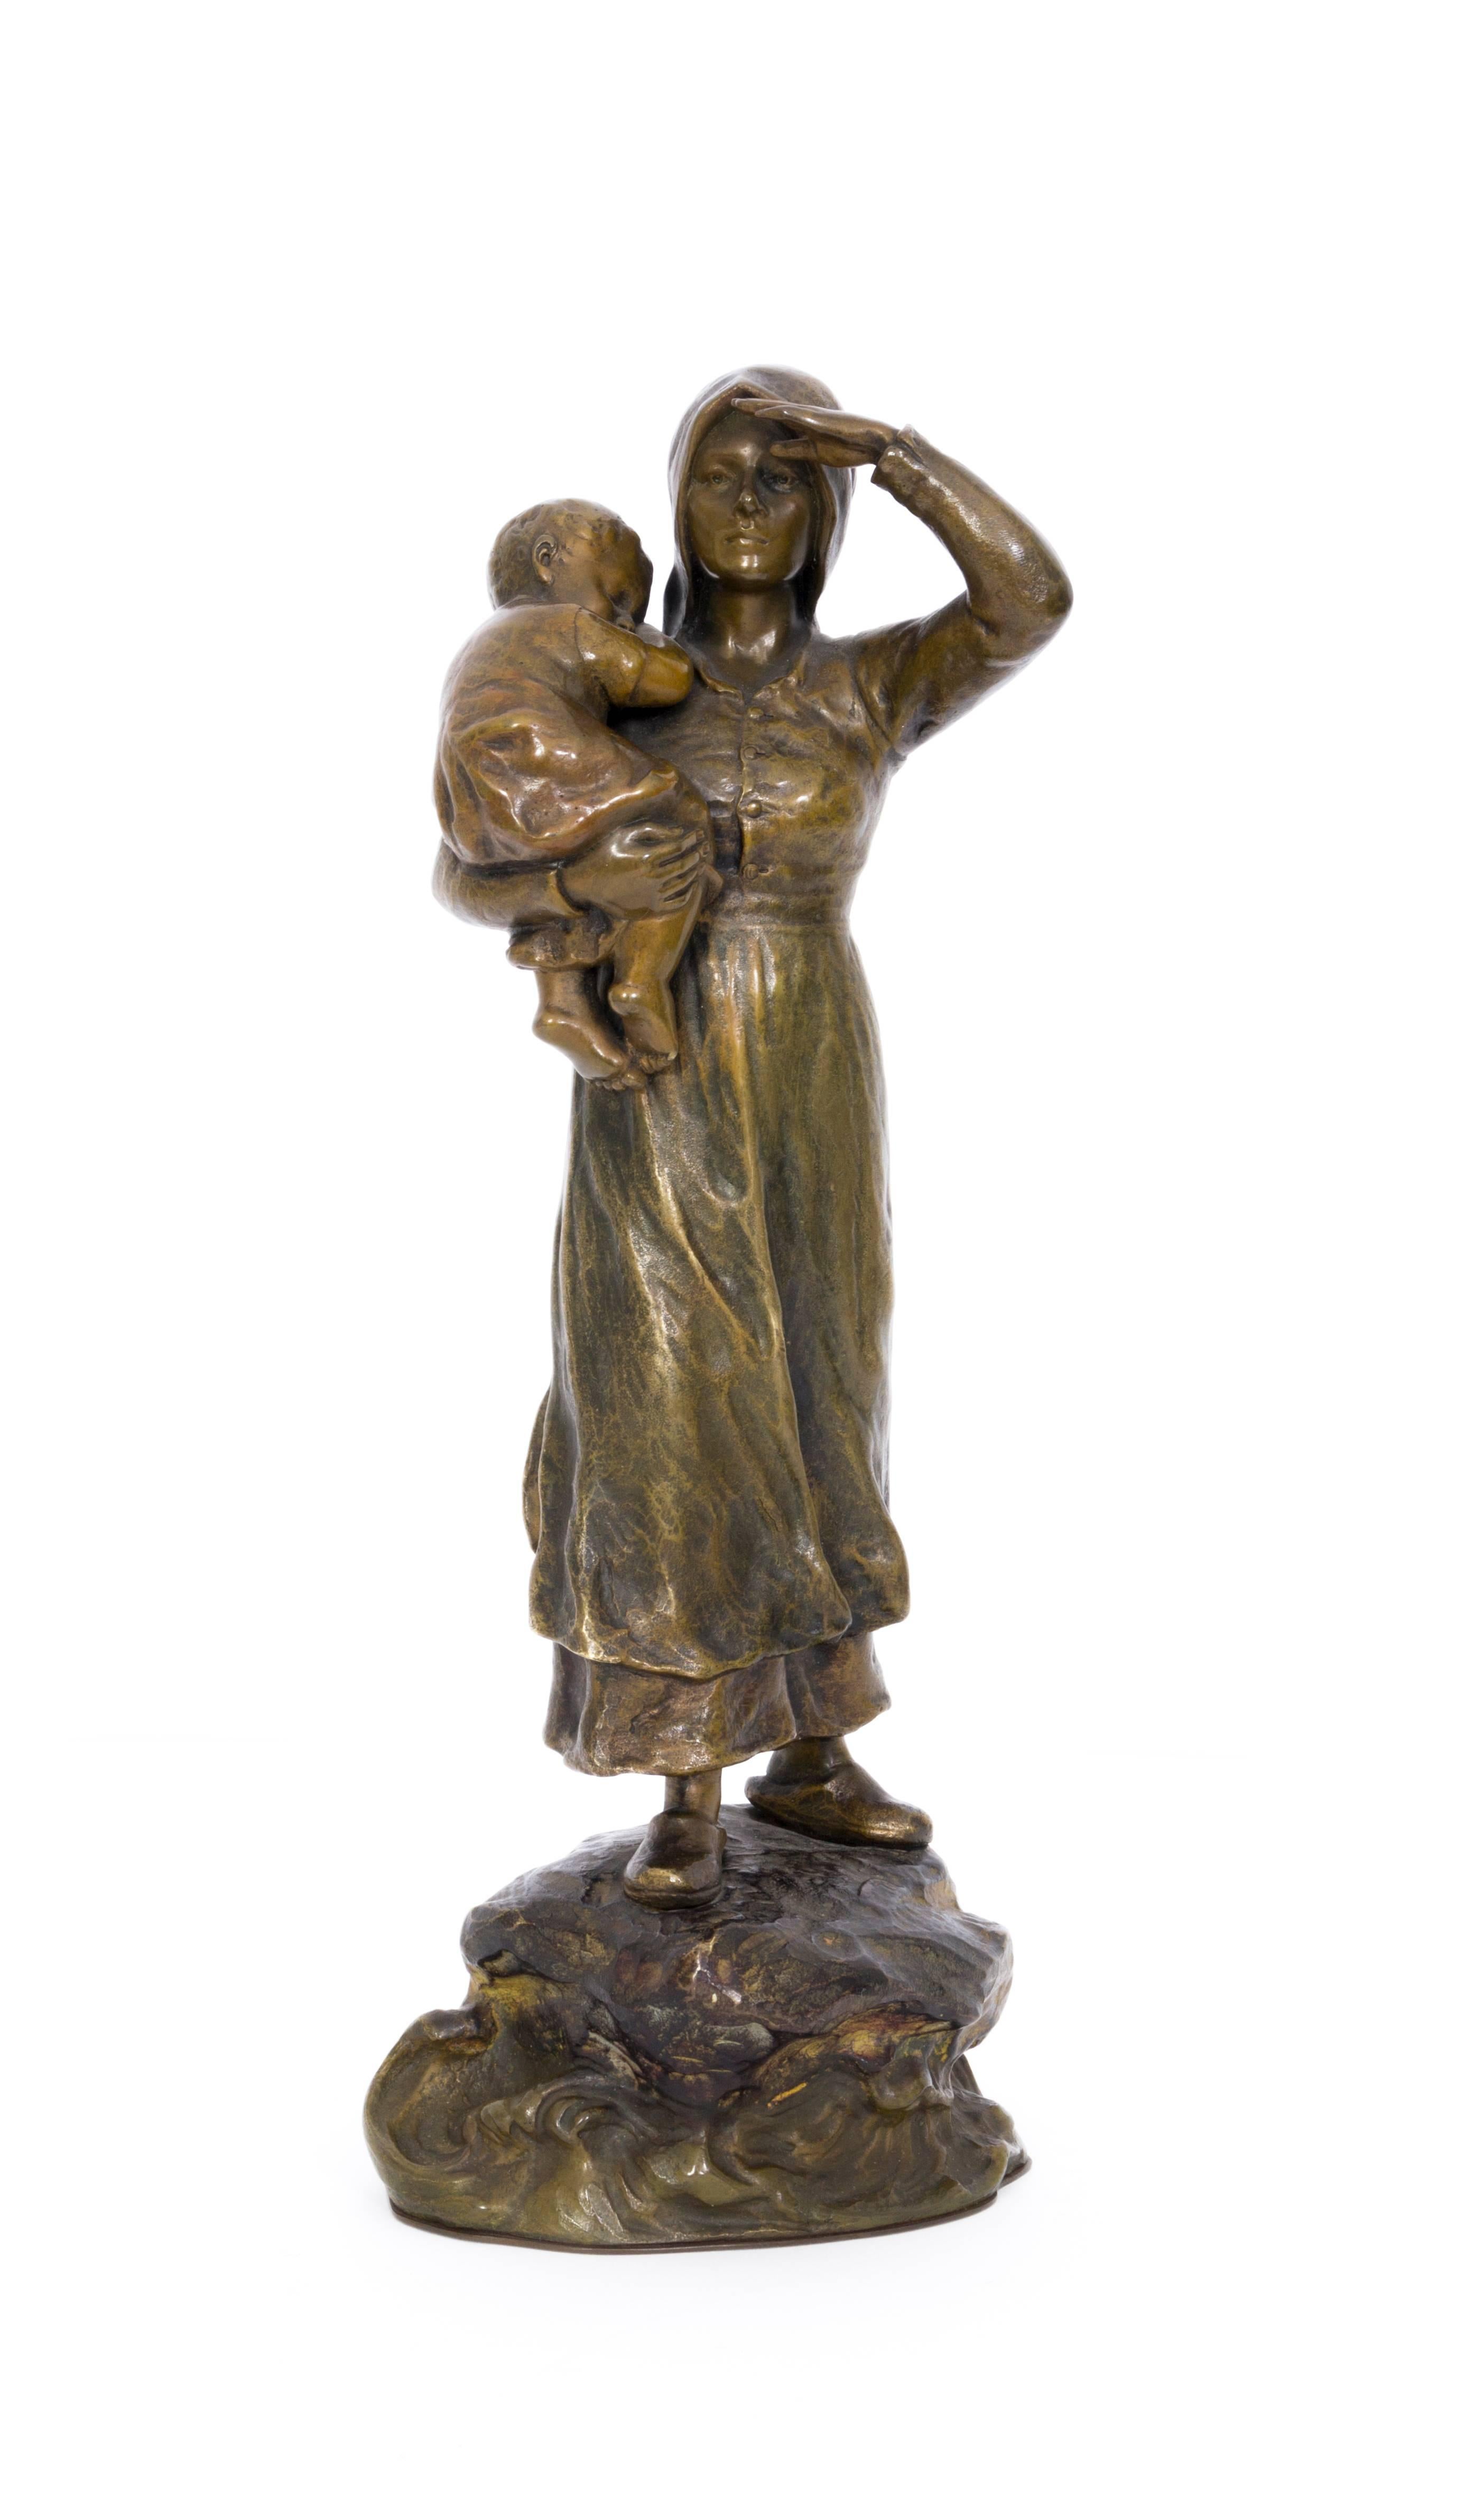 Unknown Figurative Sculpture - Bäuerin mit Kleinkind (Farmwoman with Child) - Bronze, Rural, around 1900